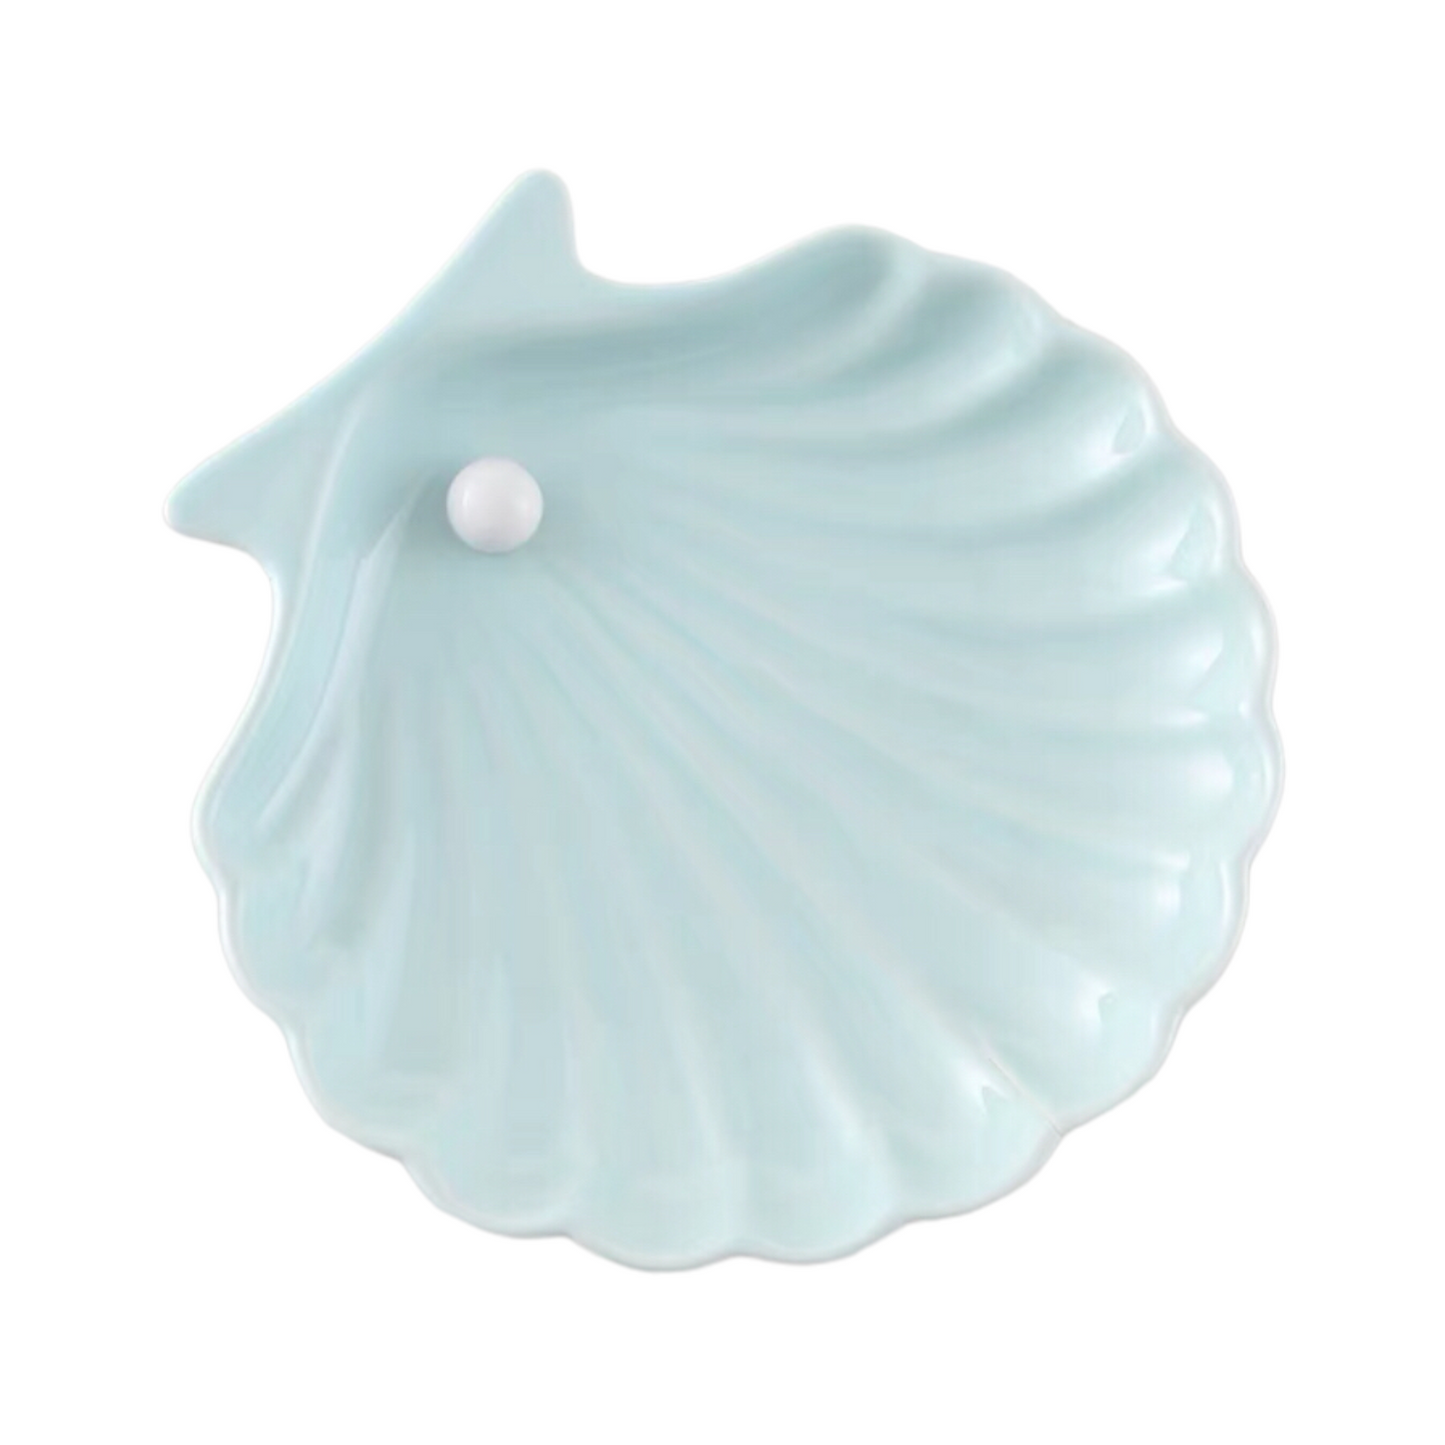 Ceramic Candle Holding Tray | Seashell Shape